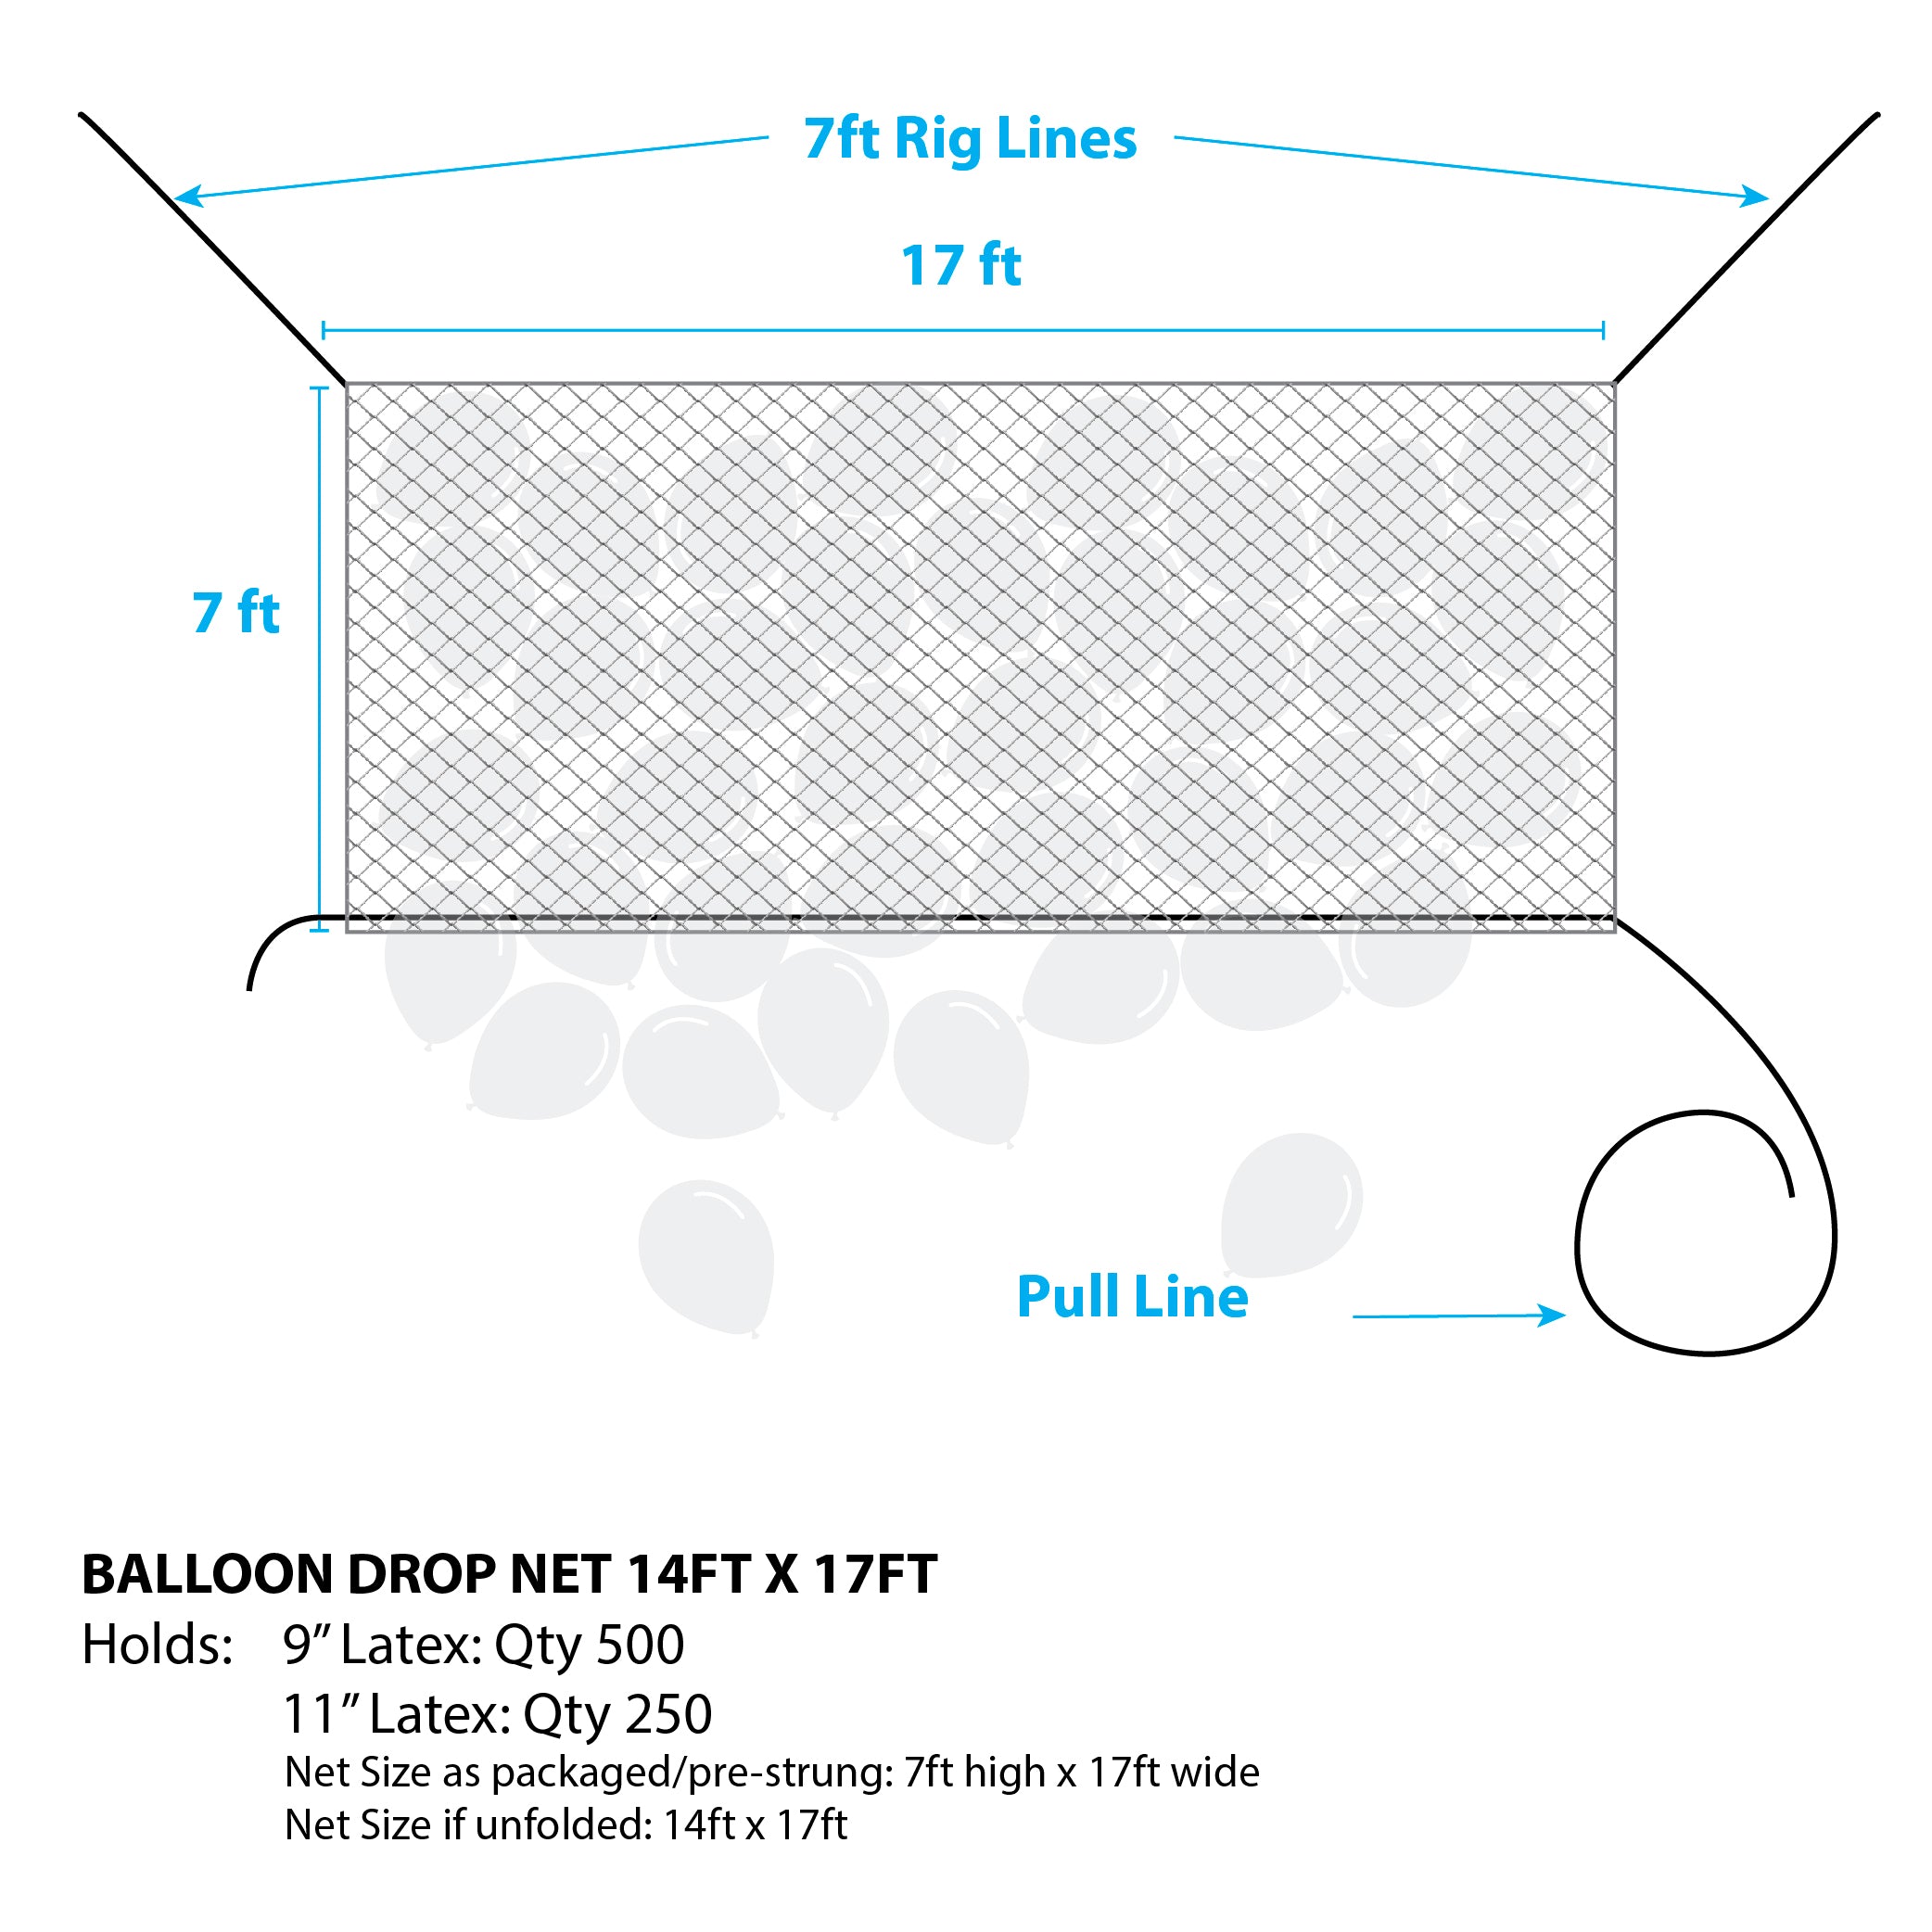 Balloon Net Prestrung 14' x 17